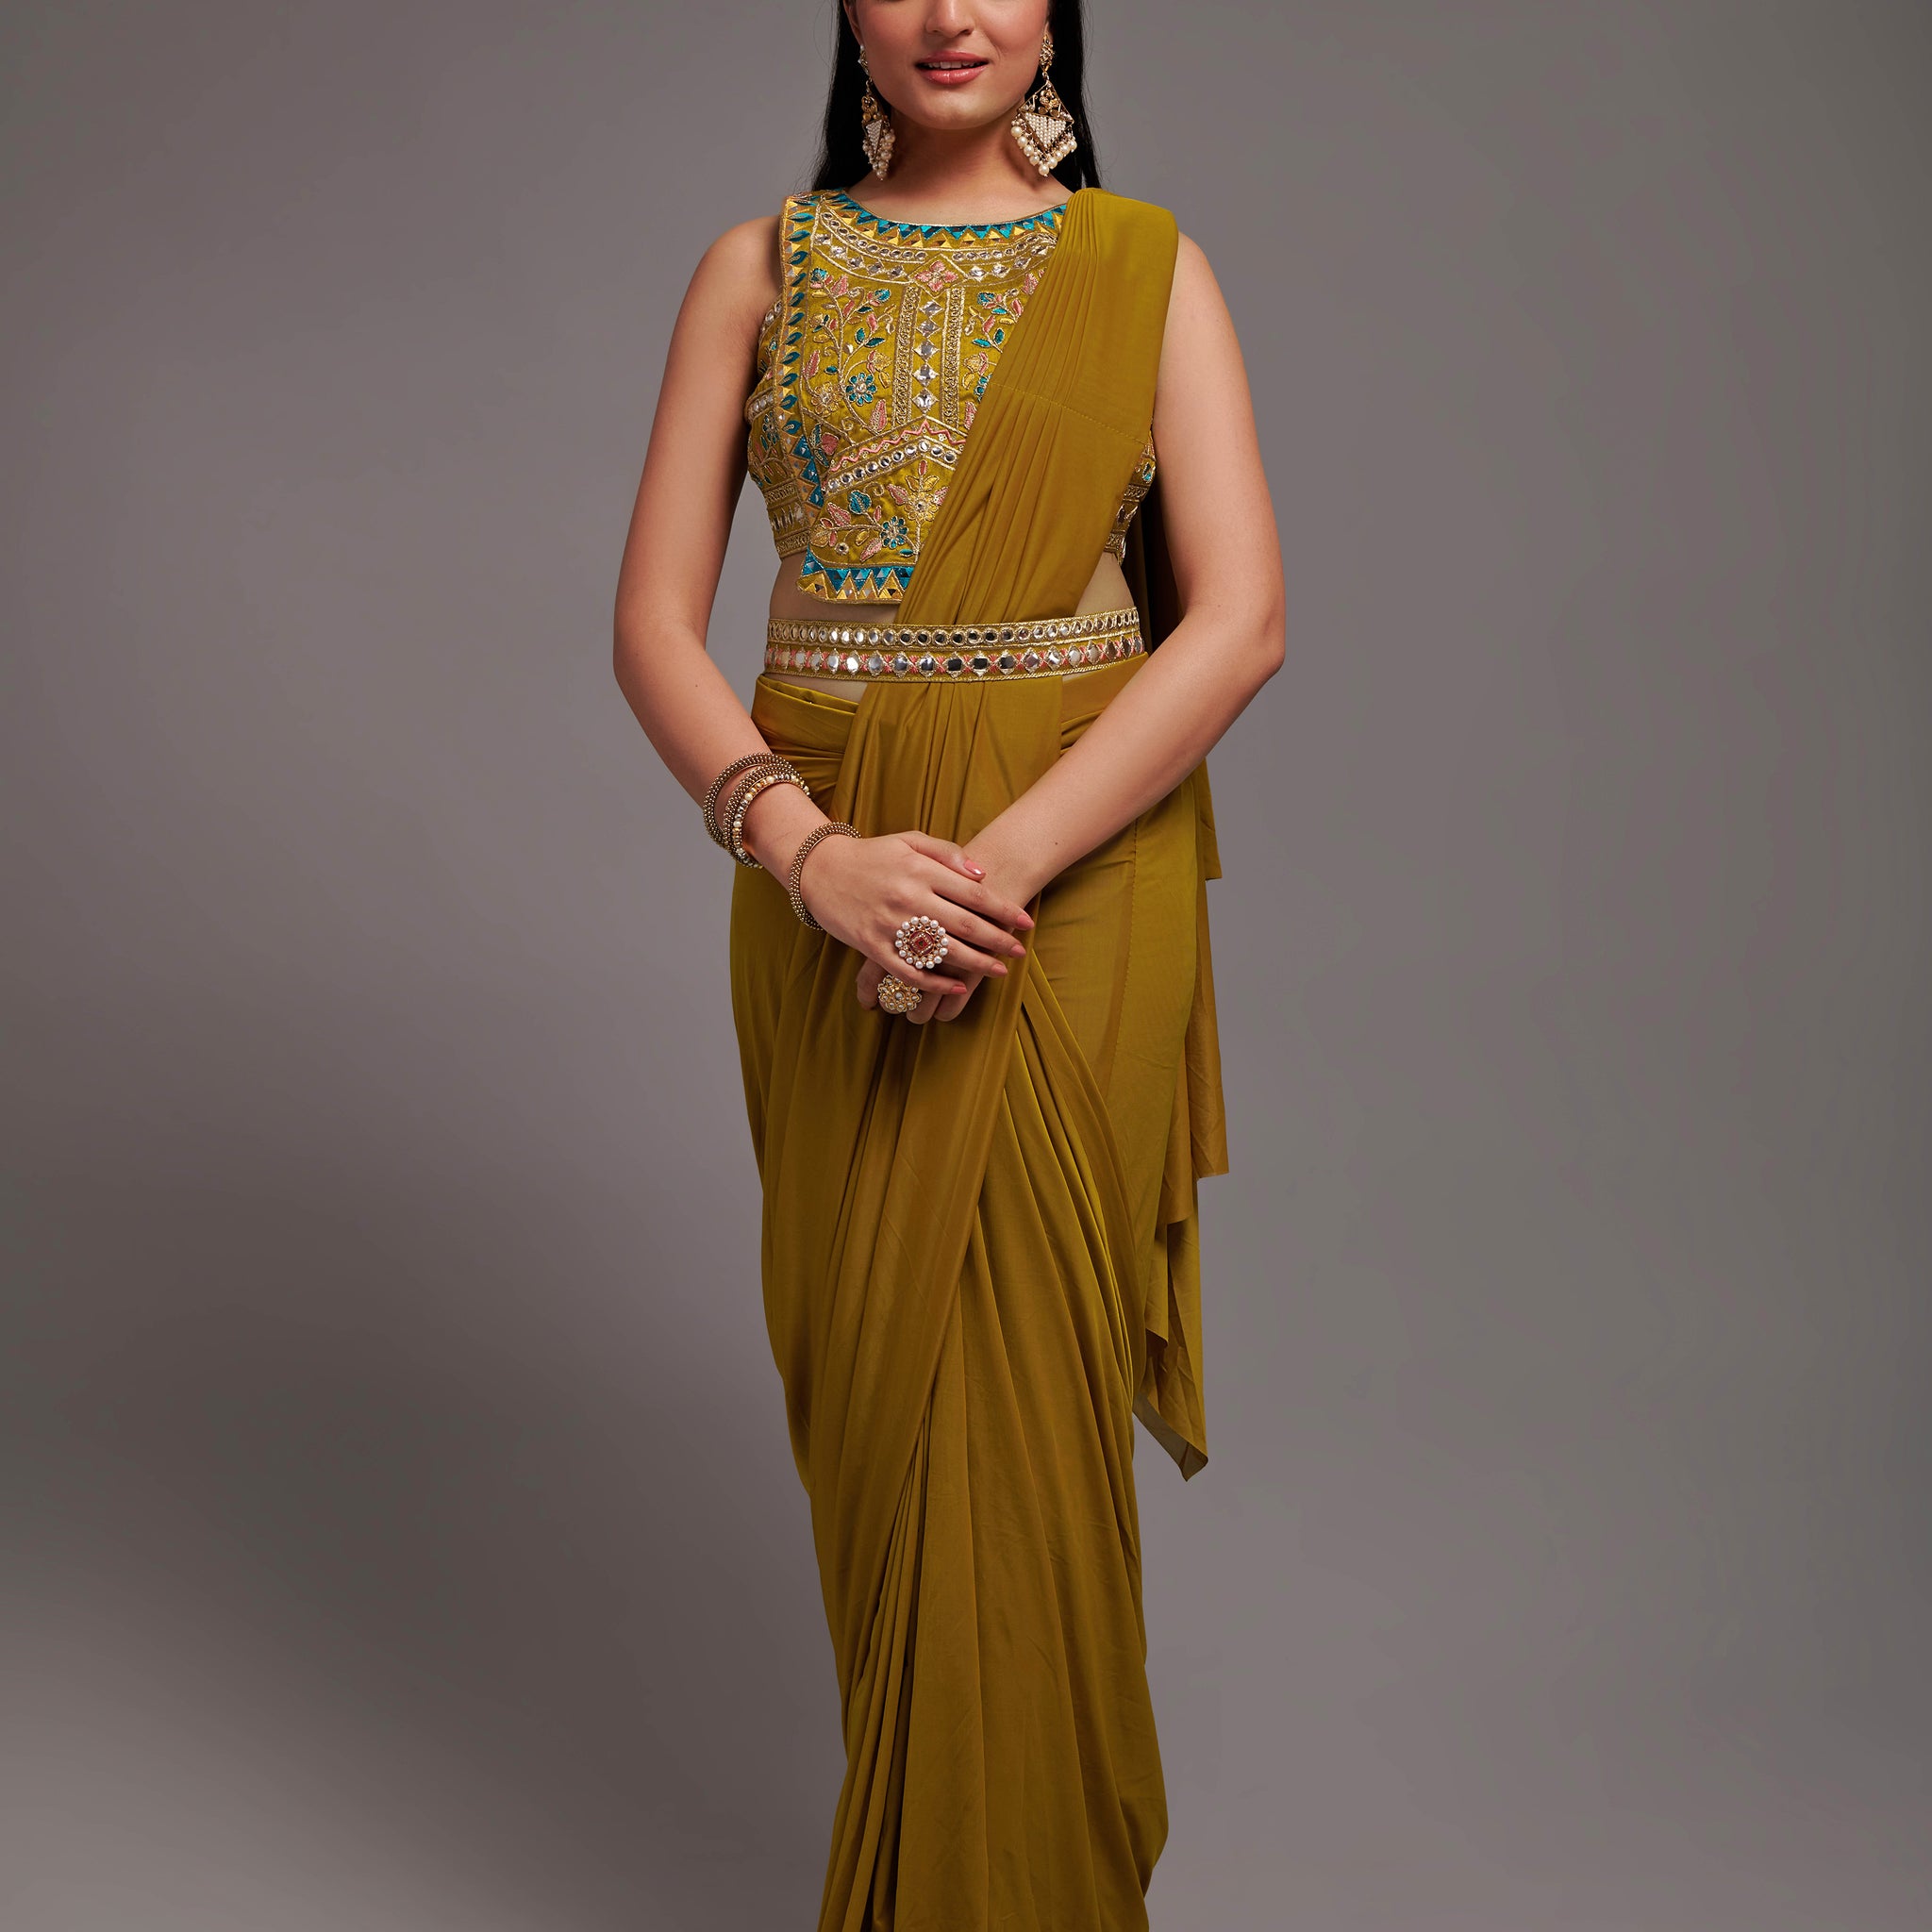 Ready To Wear Patali/Pallu stitched Style 1 Min Saree With Full Stitch Blouse